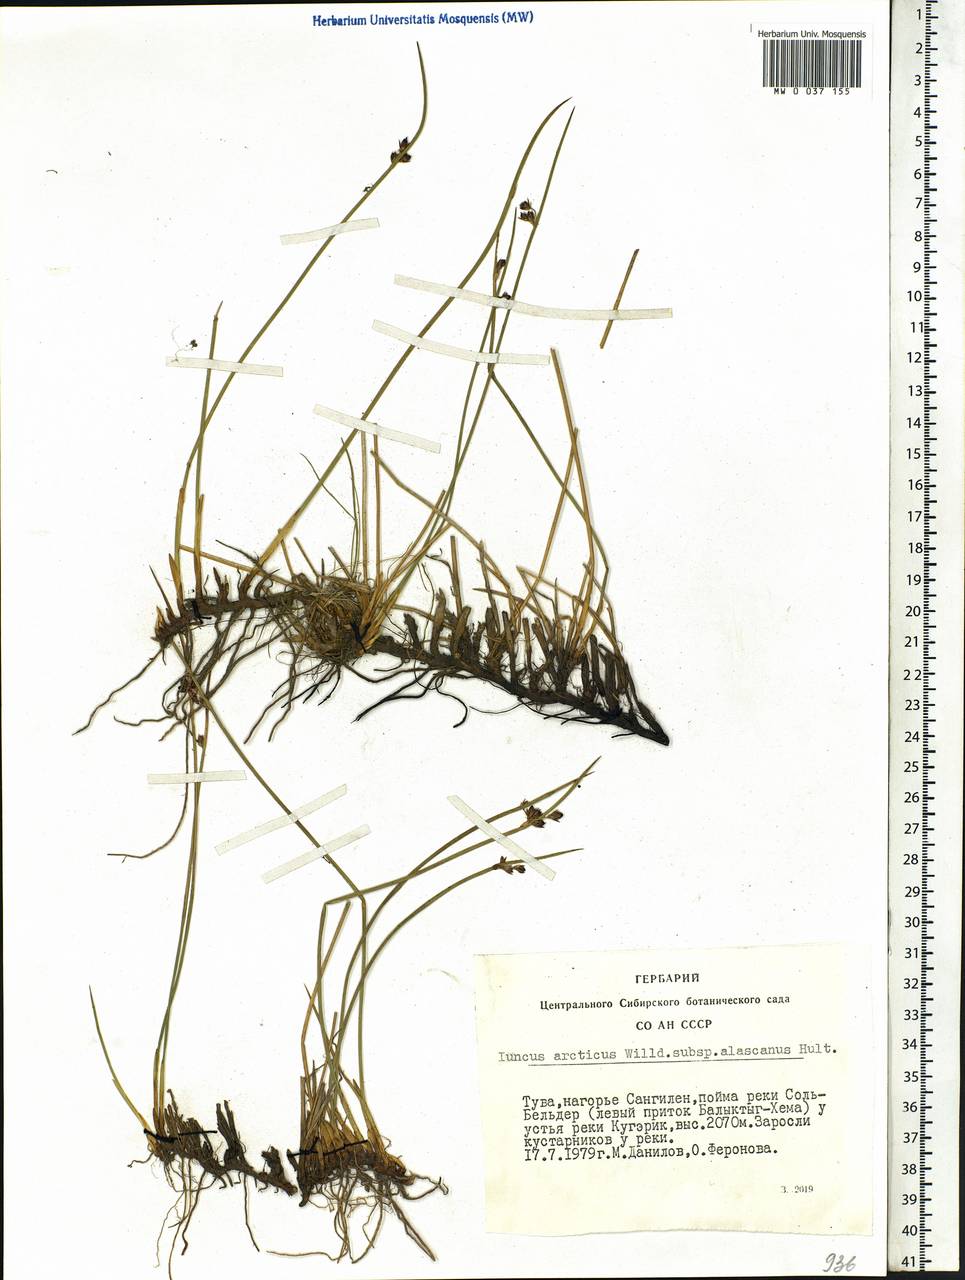 Juncus arcticus Willd., Siberia, Altai & Sayany Mountains (S2) (Russia)